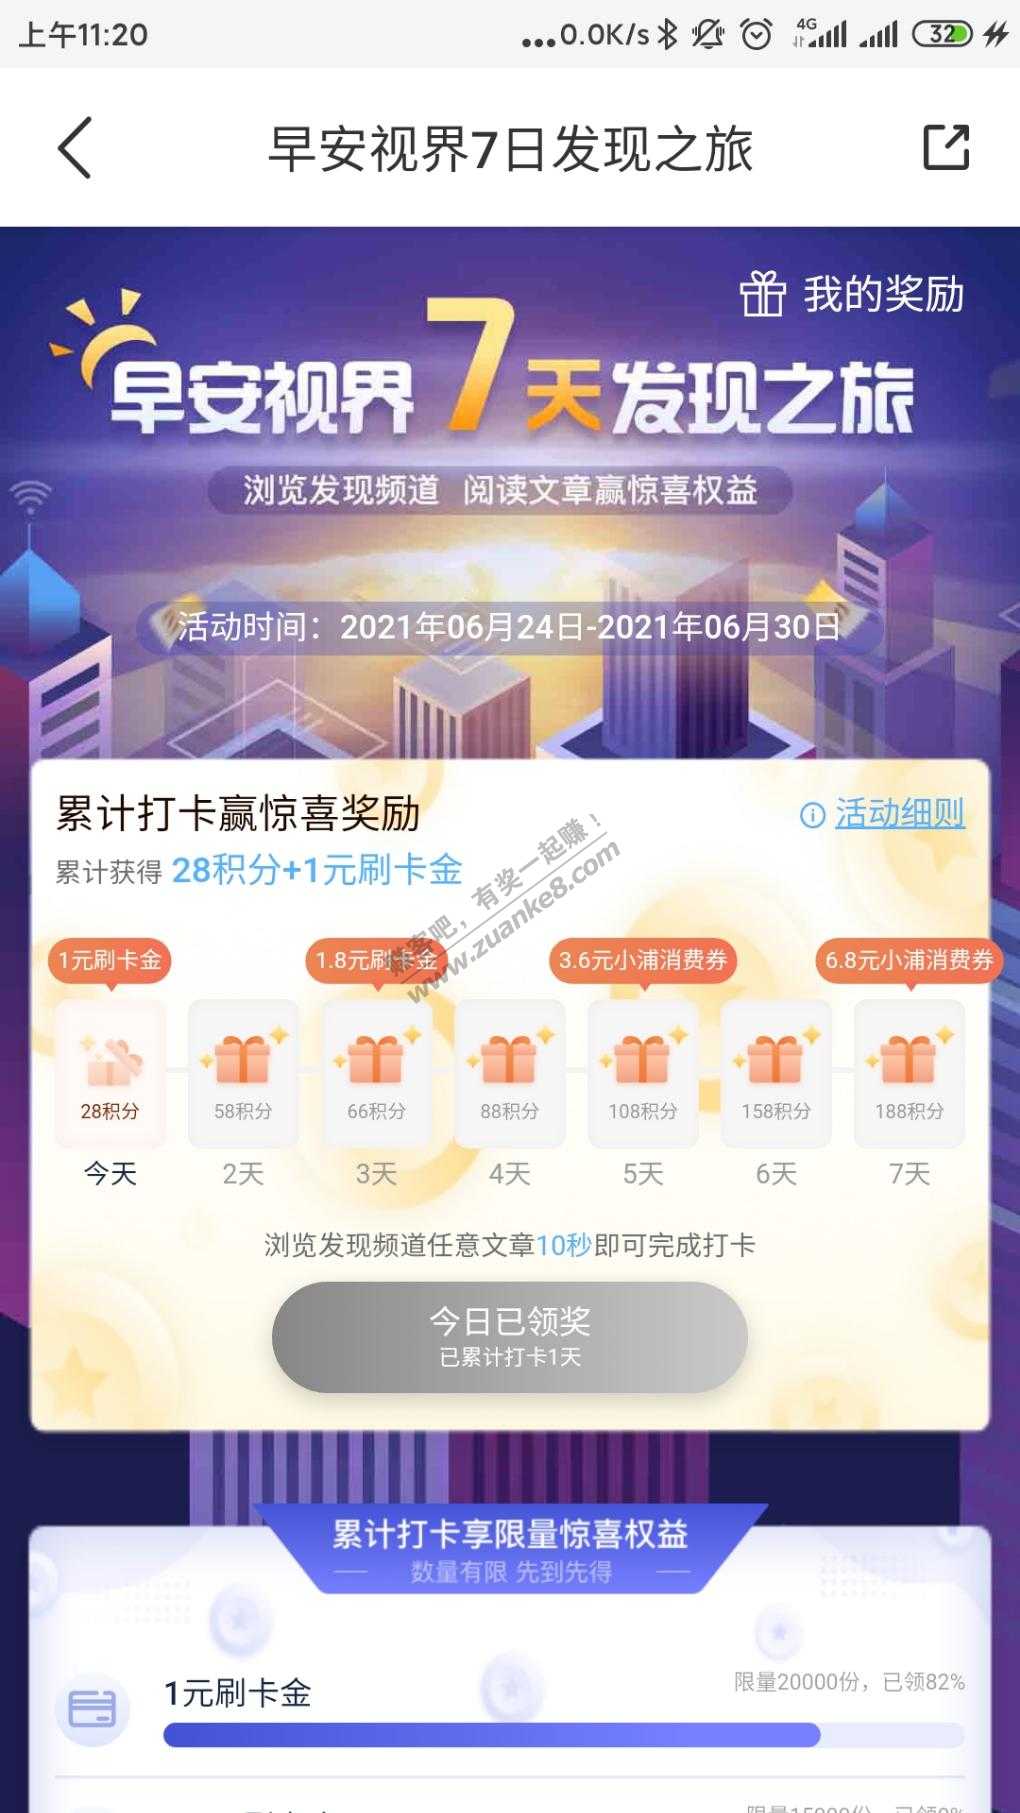 普大喜奔app领积分和刷卡金-惠小助(52huixz.com)